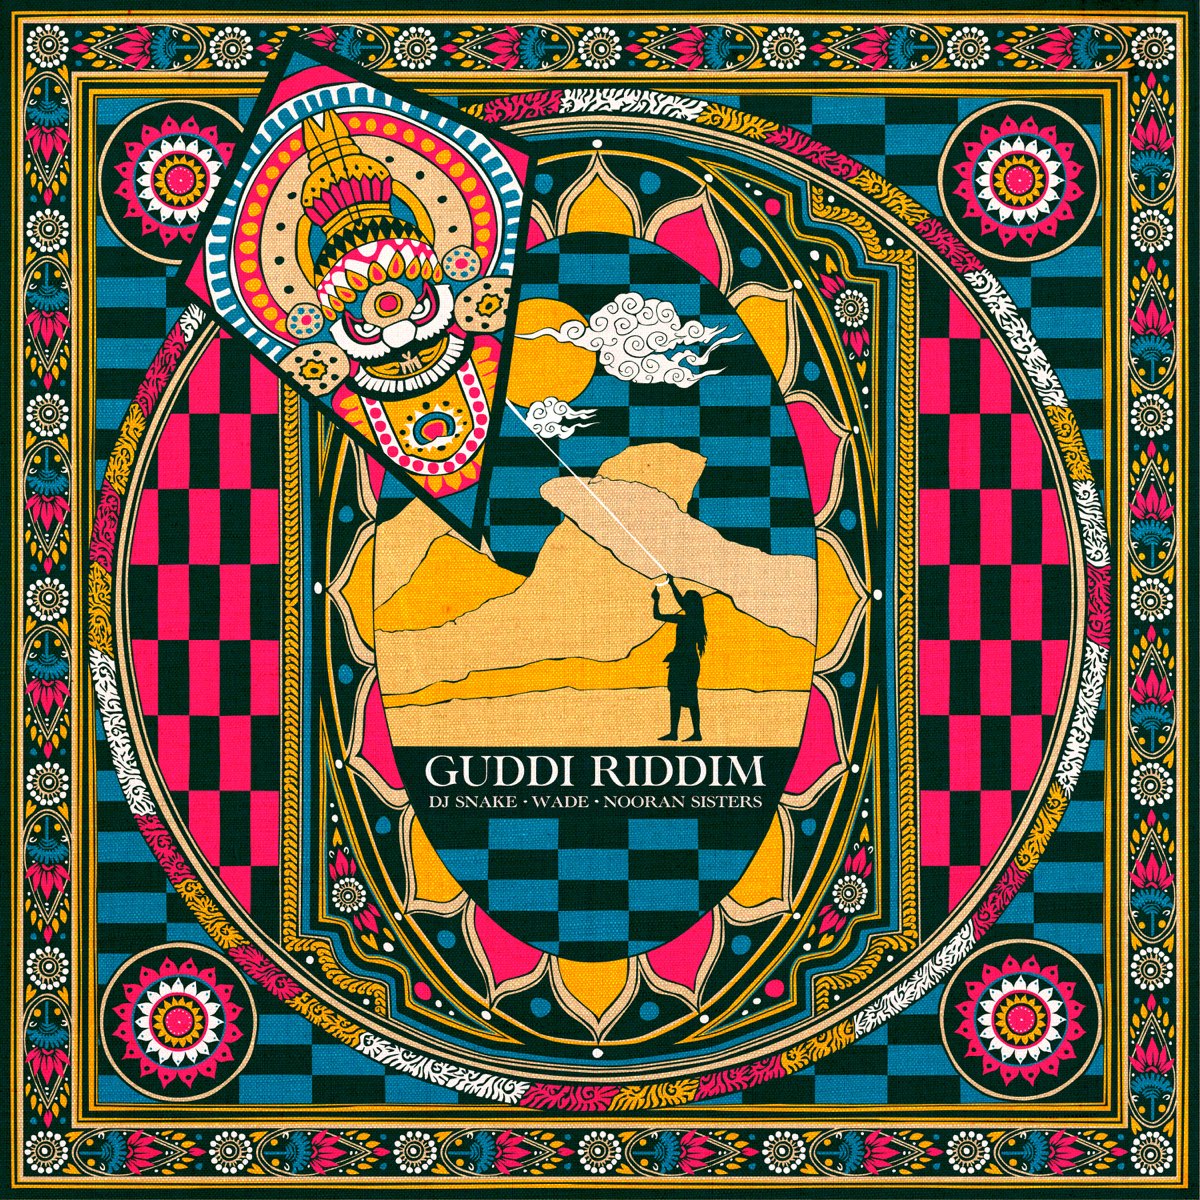 DJ Snake & Wade featuring Nooran Sisters — Guddi Riddim cover artwork